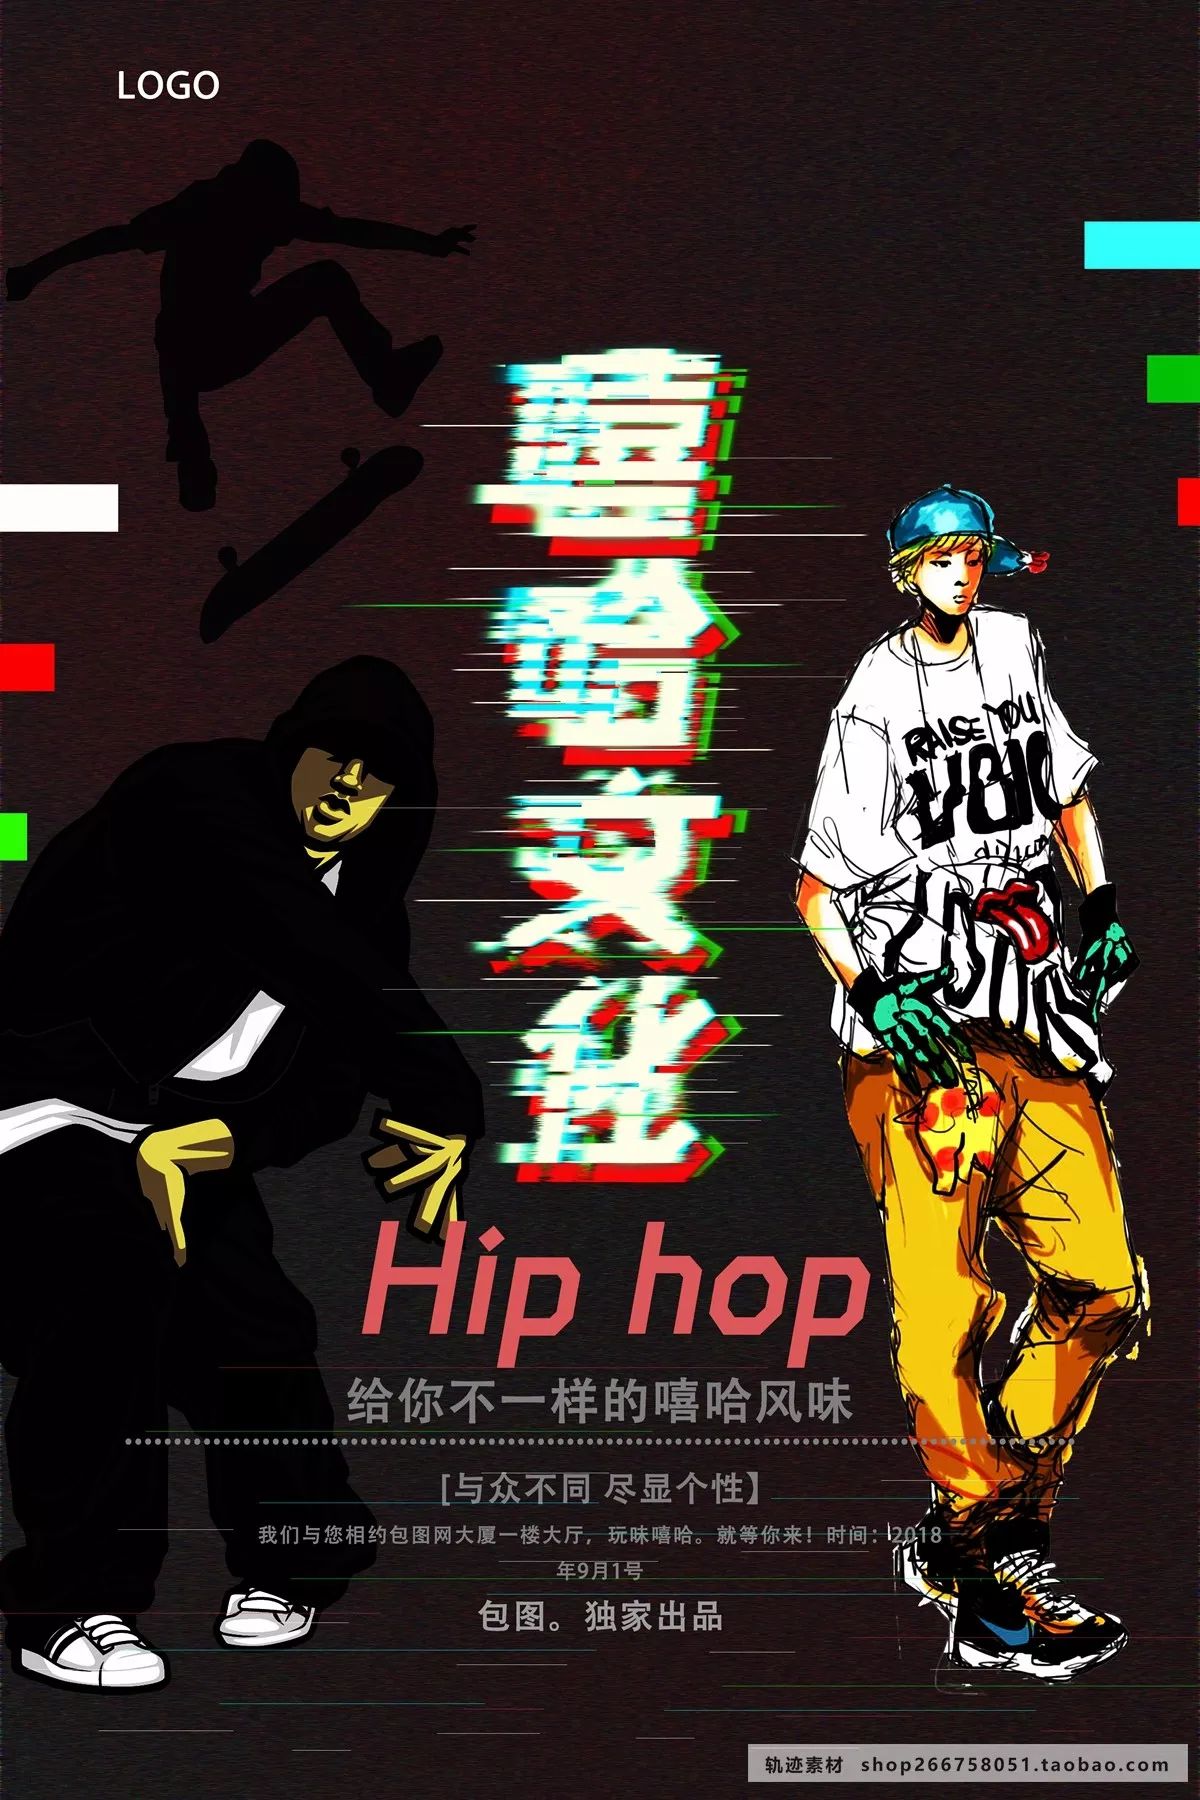 24款hiphop,嘻哈文化,街头涂鸦,街舞派对,音乐年轻海报设计psd源文件